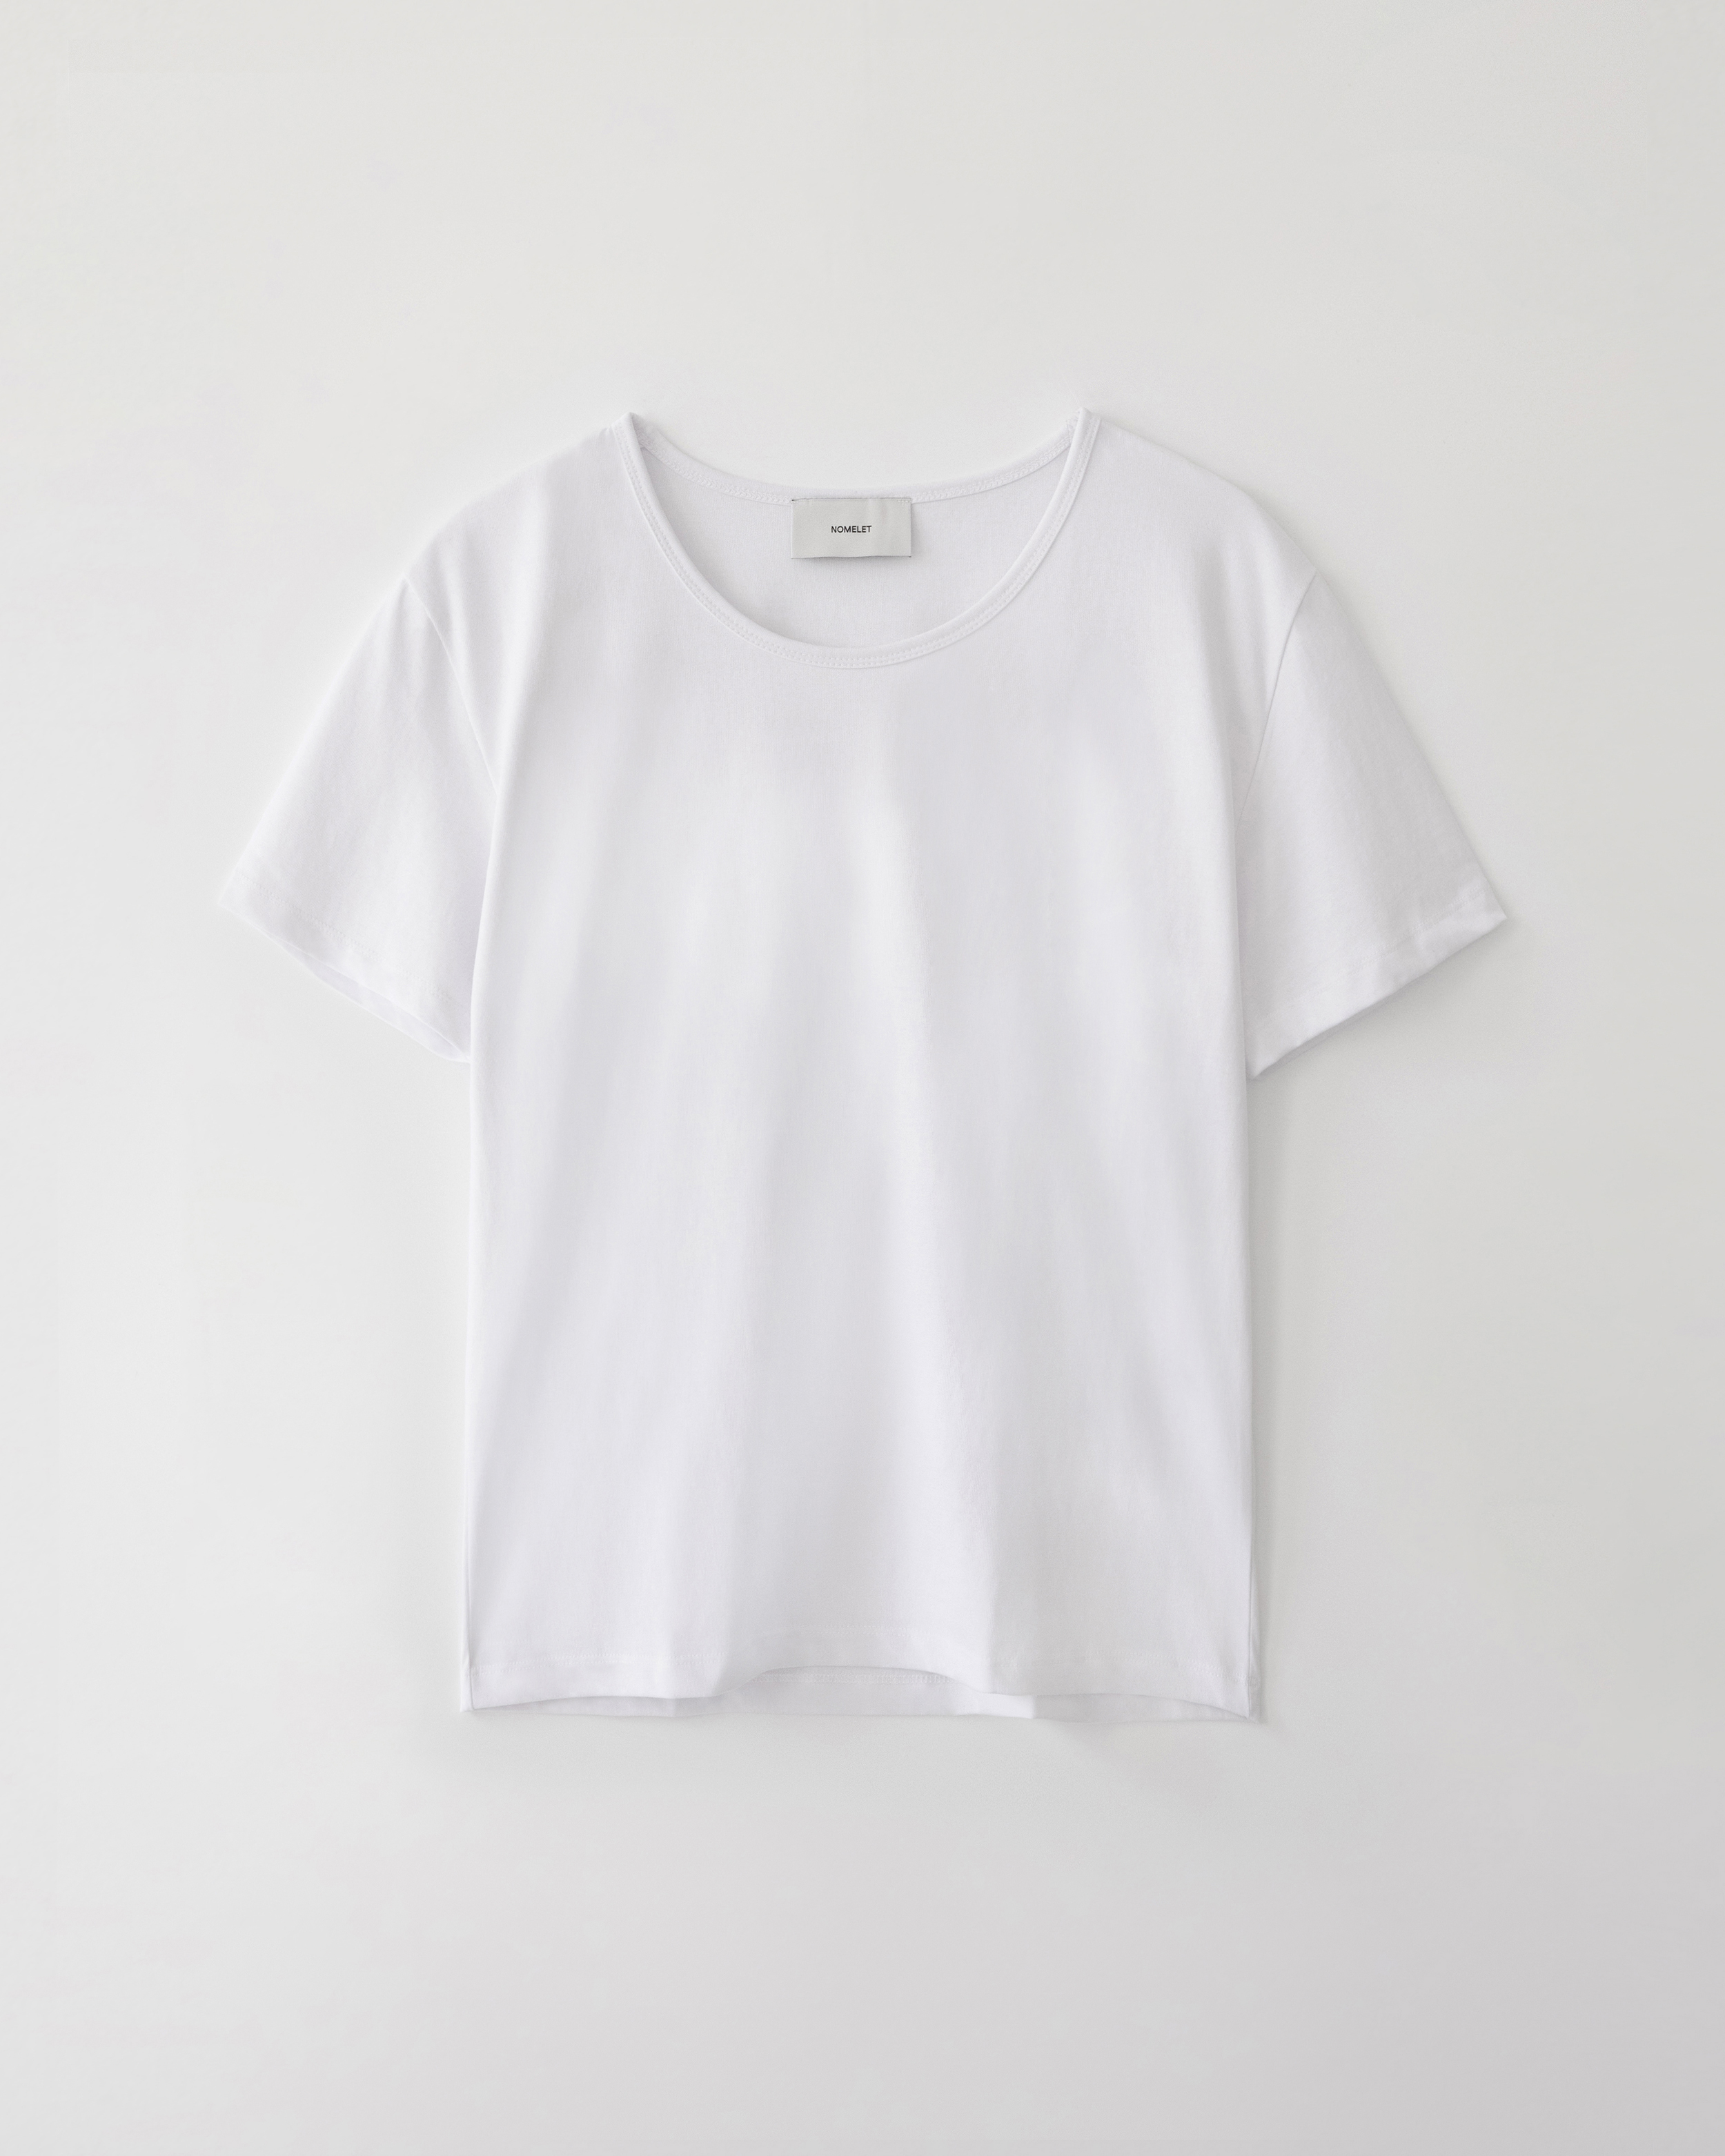 Essential Supima U neck t-shirt (3 colors)